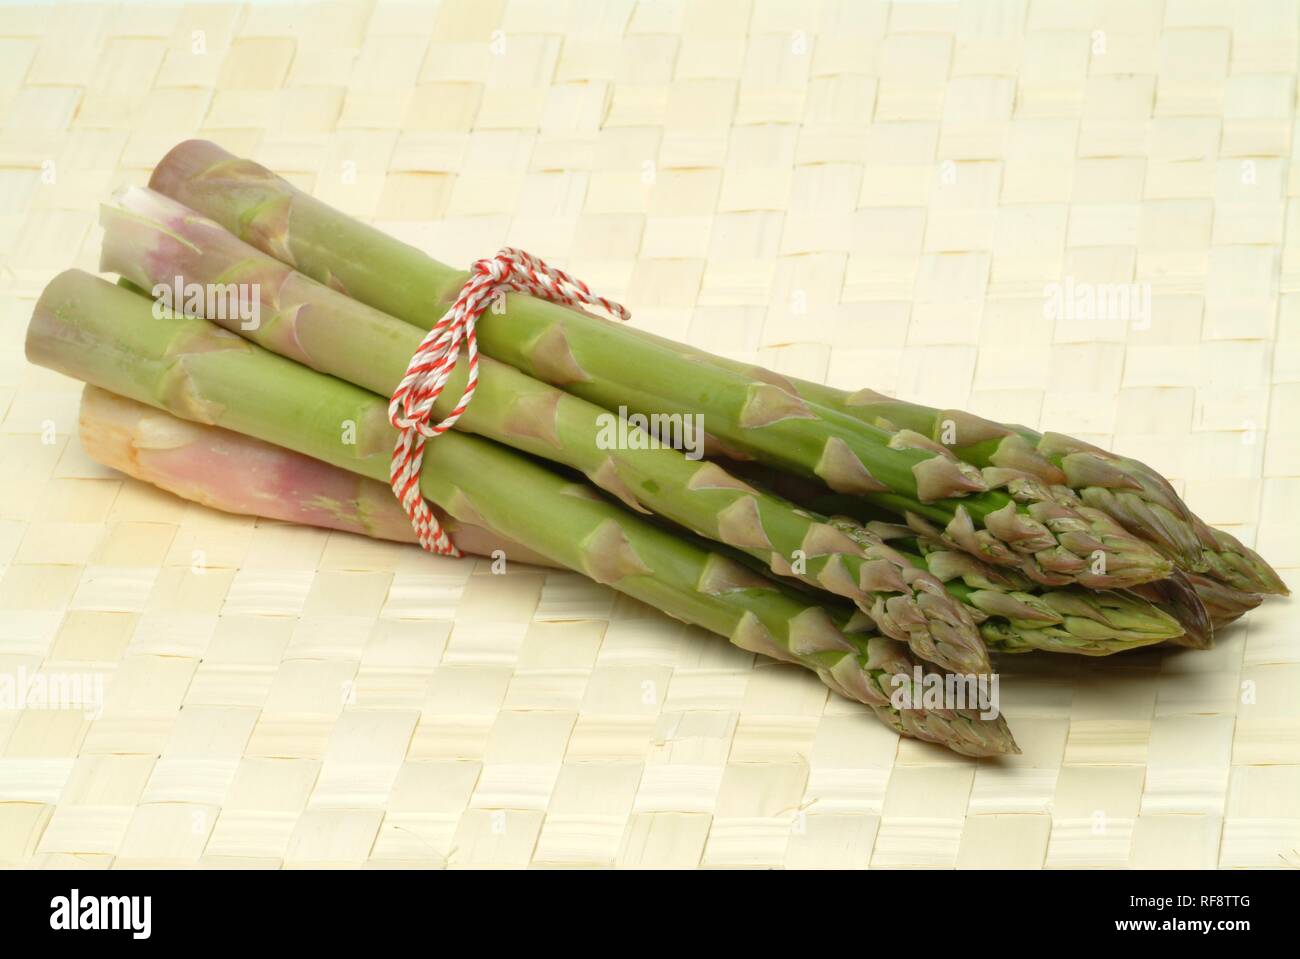 Green Asparagus (Asparagus officinalis, Asparago verde) Stock Photo